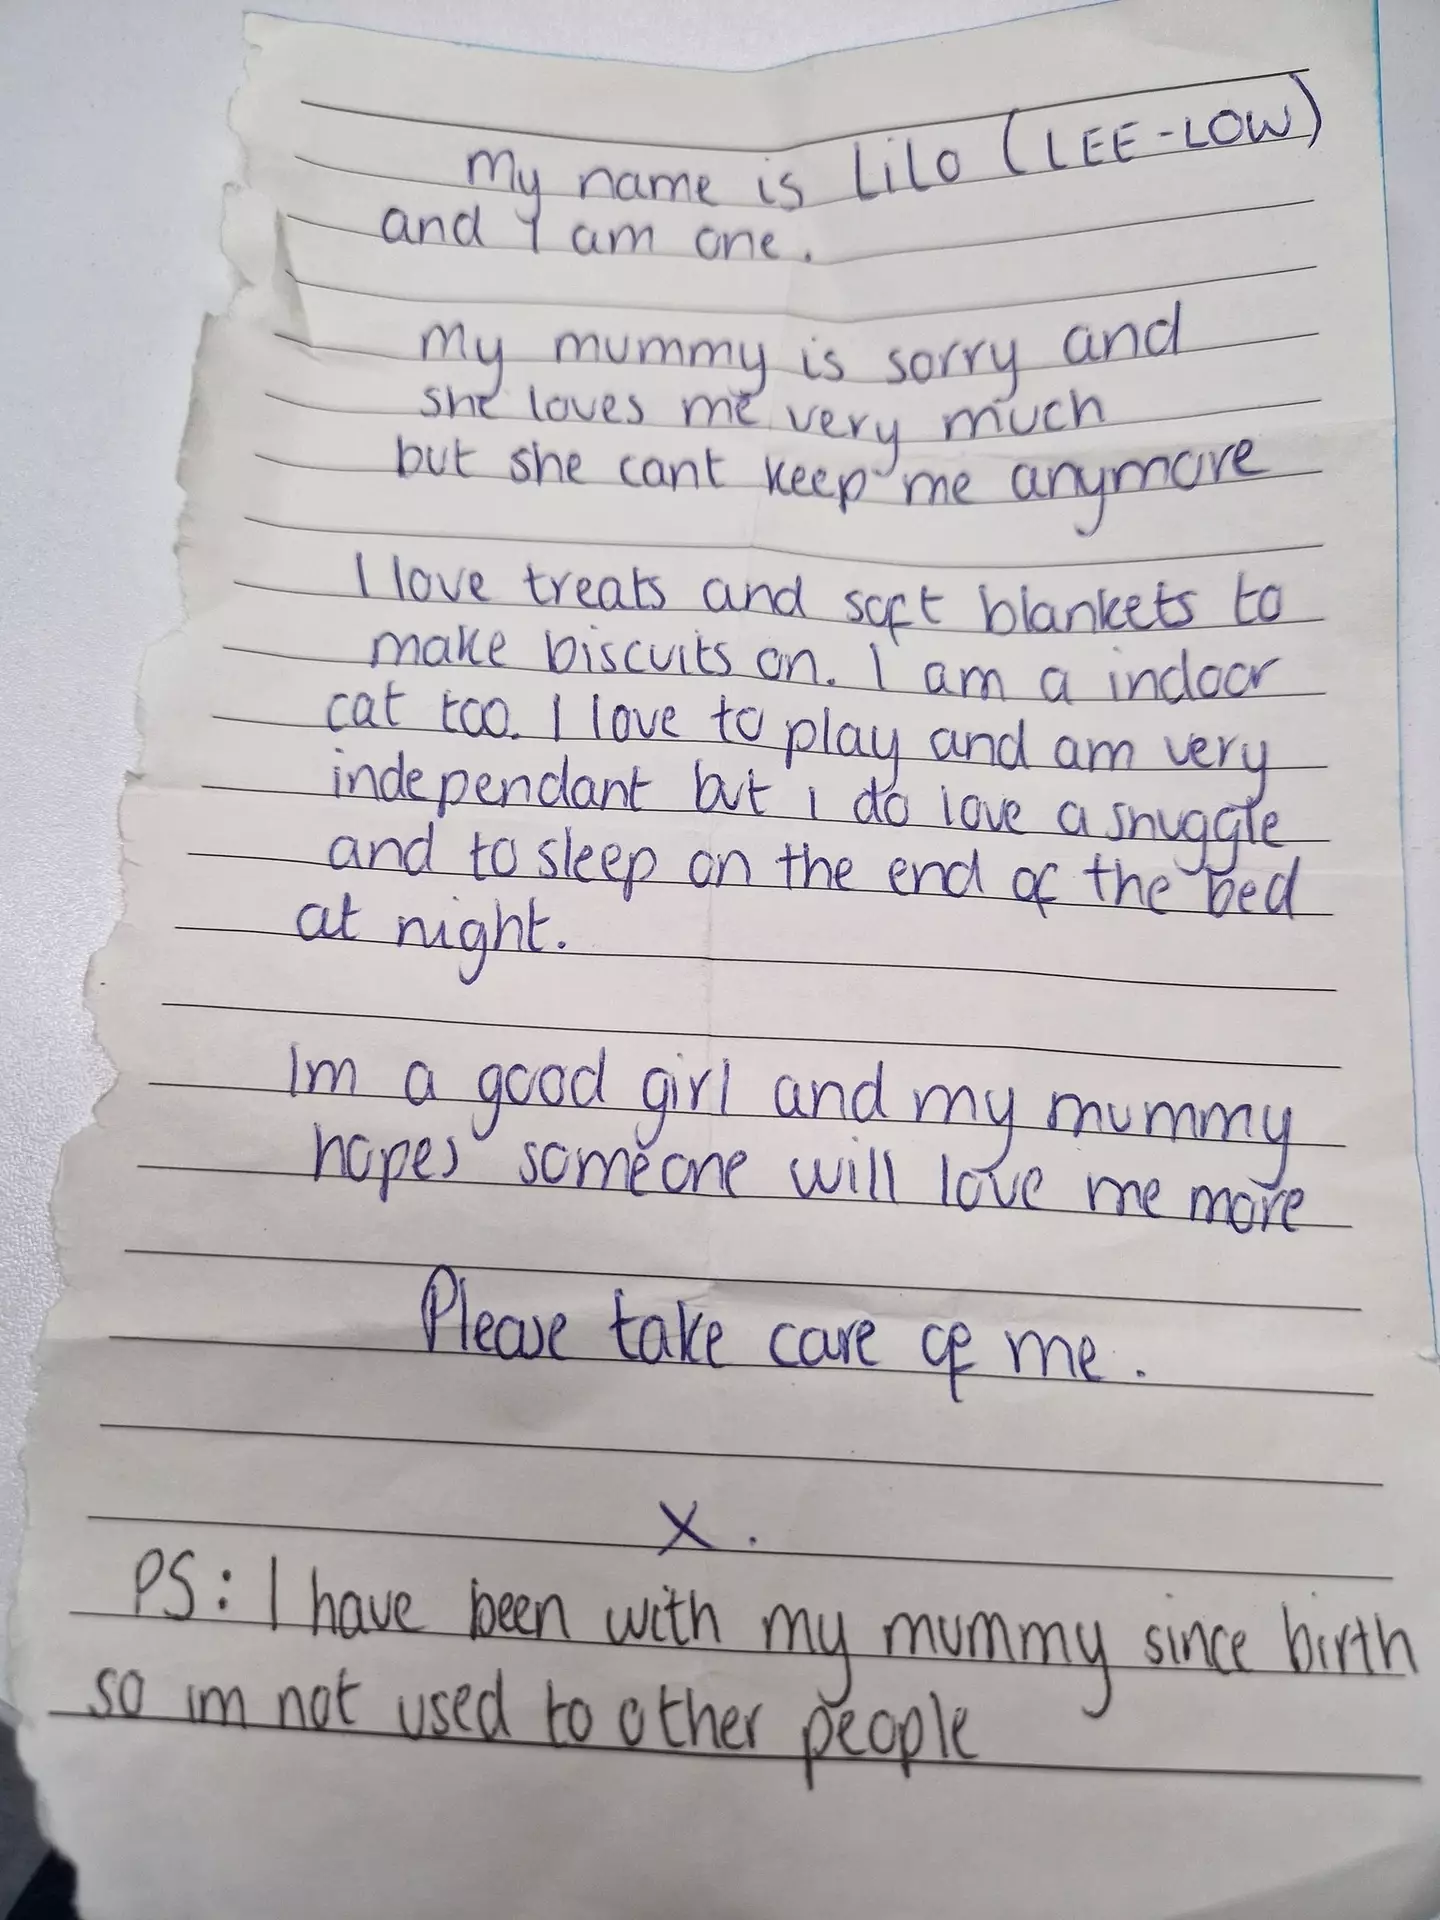 The heartbreaking note left one social media user in tears.